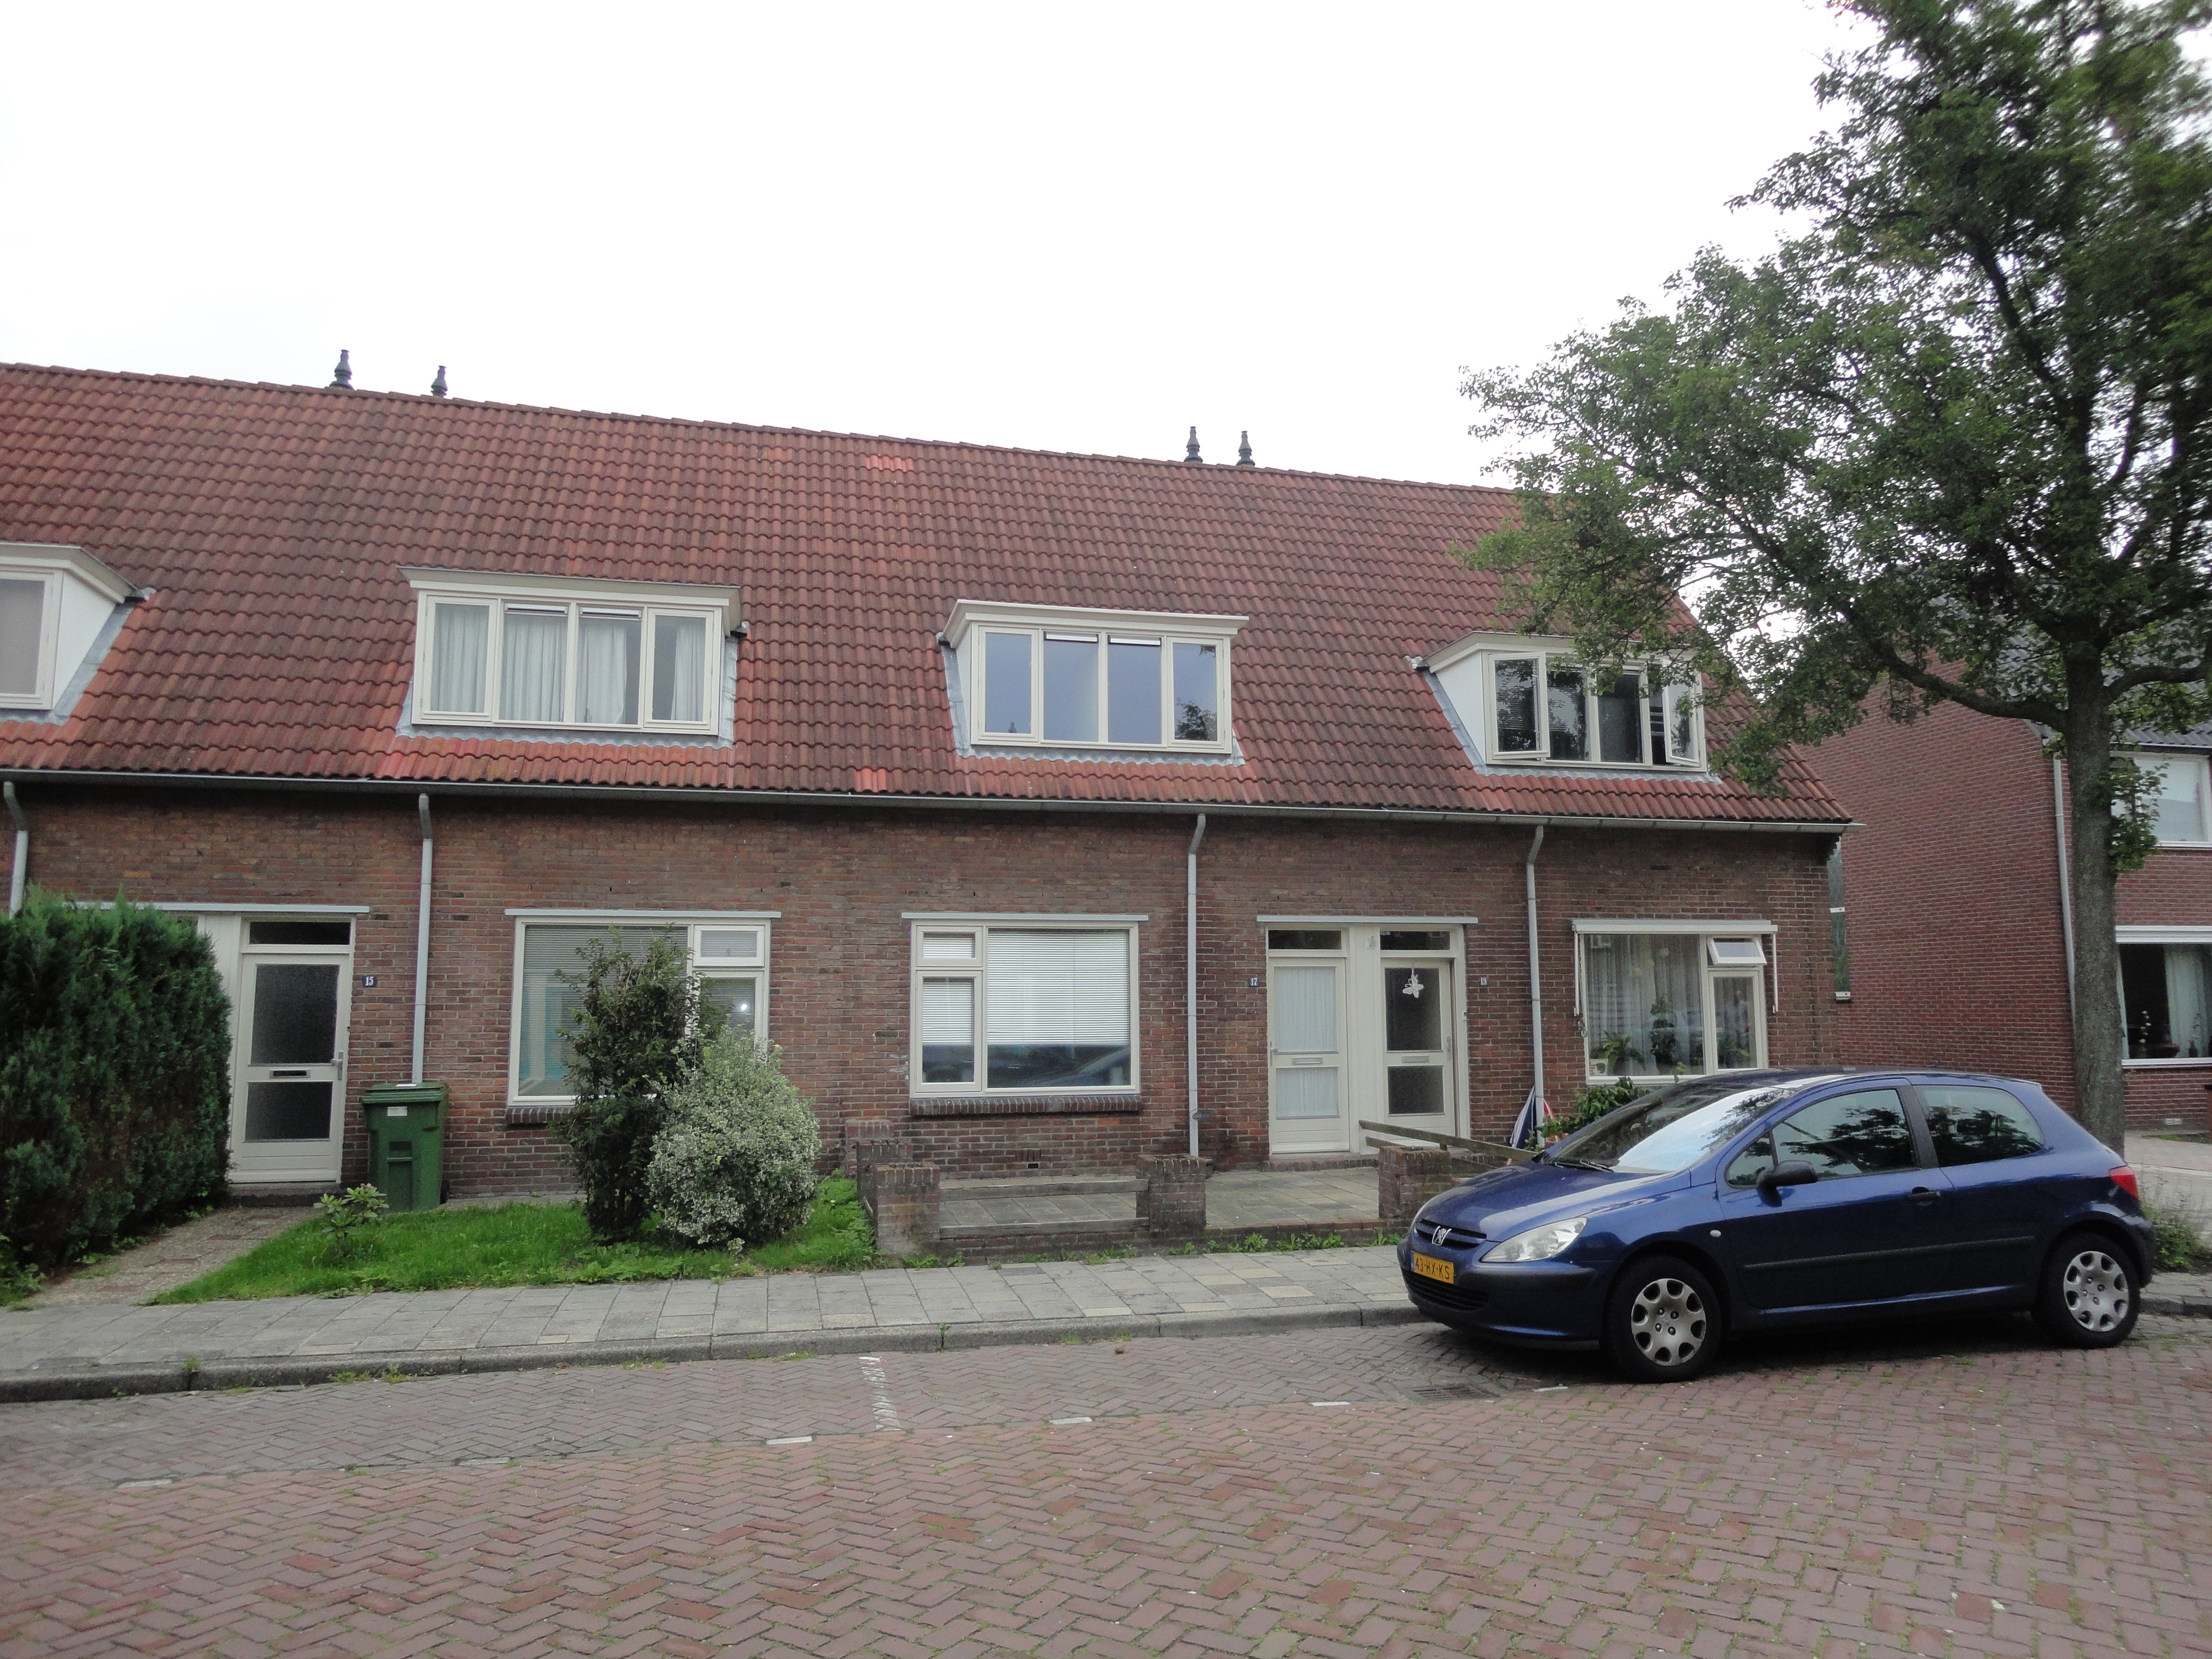 Albert Steenbergenstraat 17, 7906 BE Hoogeveen, Nederland